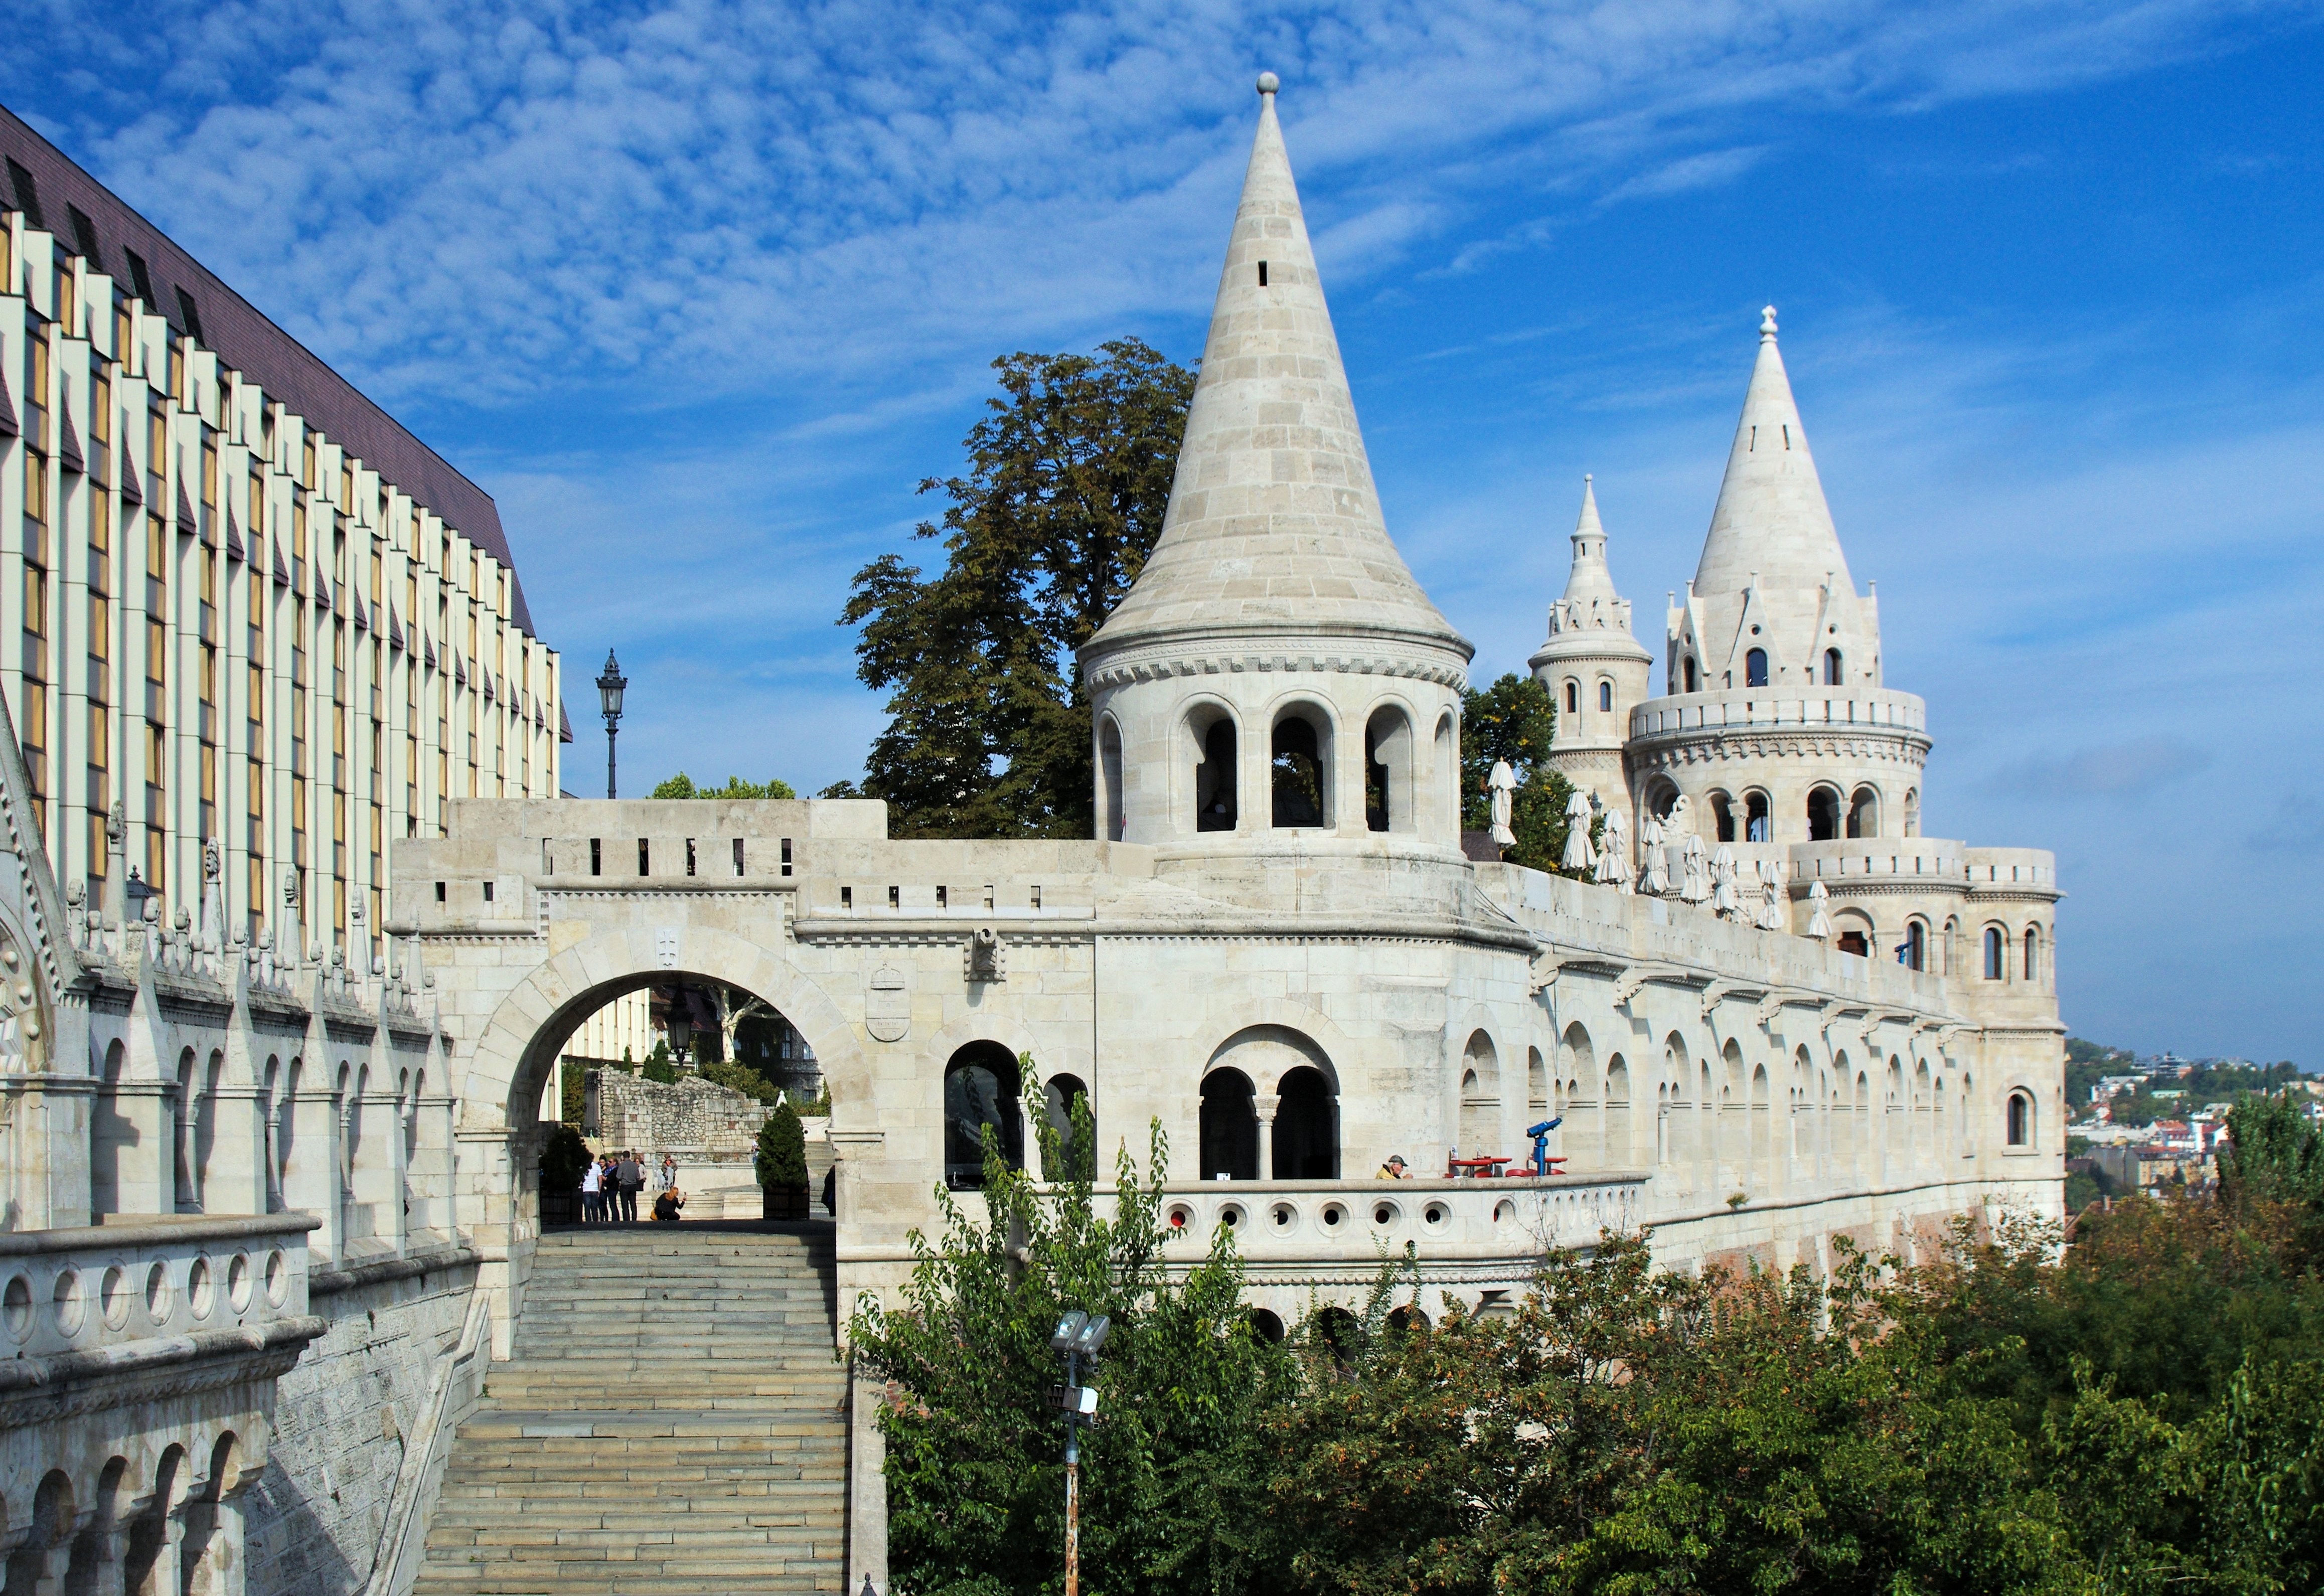 ブダペストを訪れるときにしなければならない5つのこと